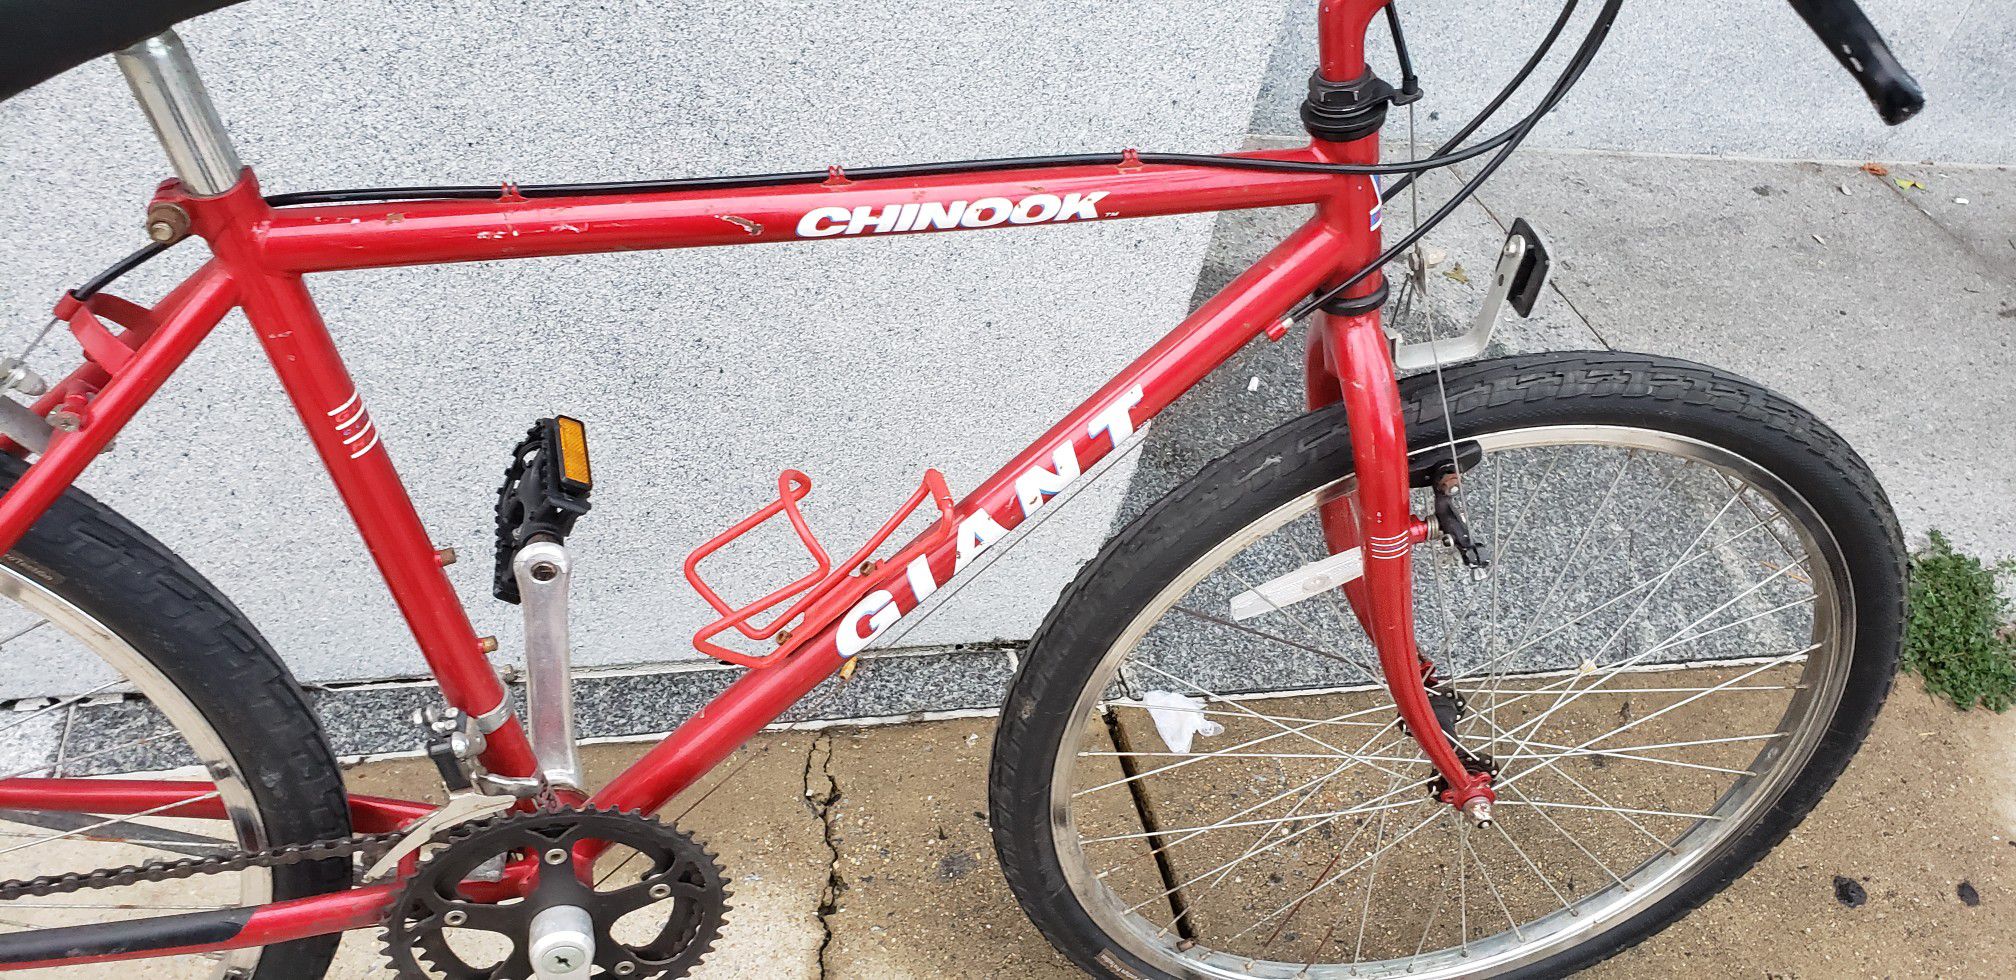 Chinook Giant Bike